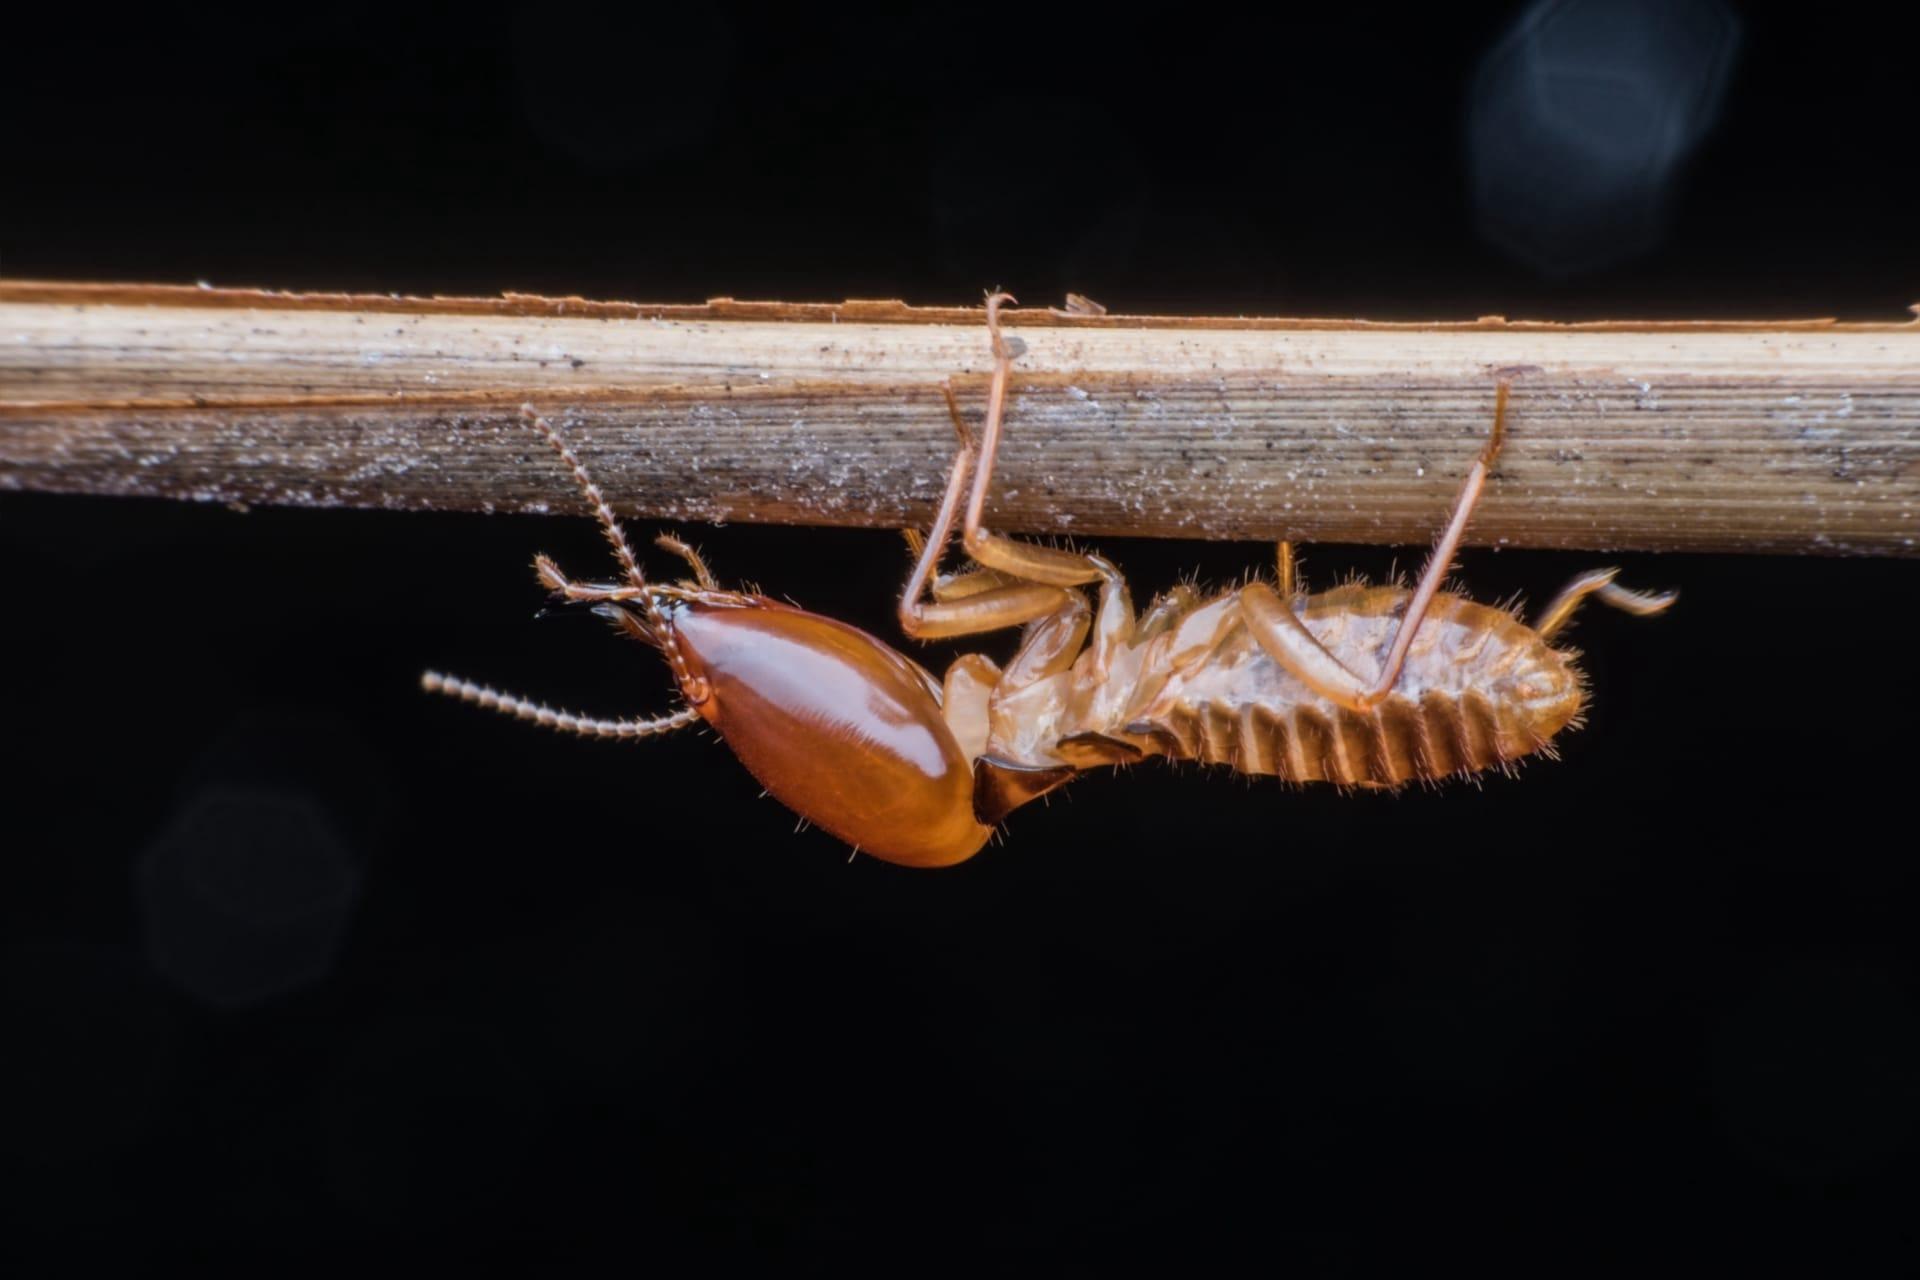 Termites pictures